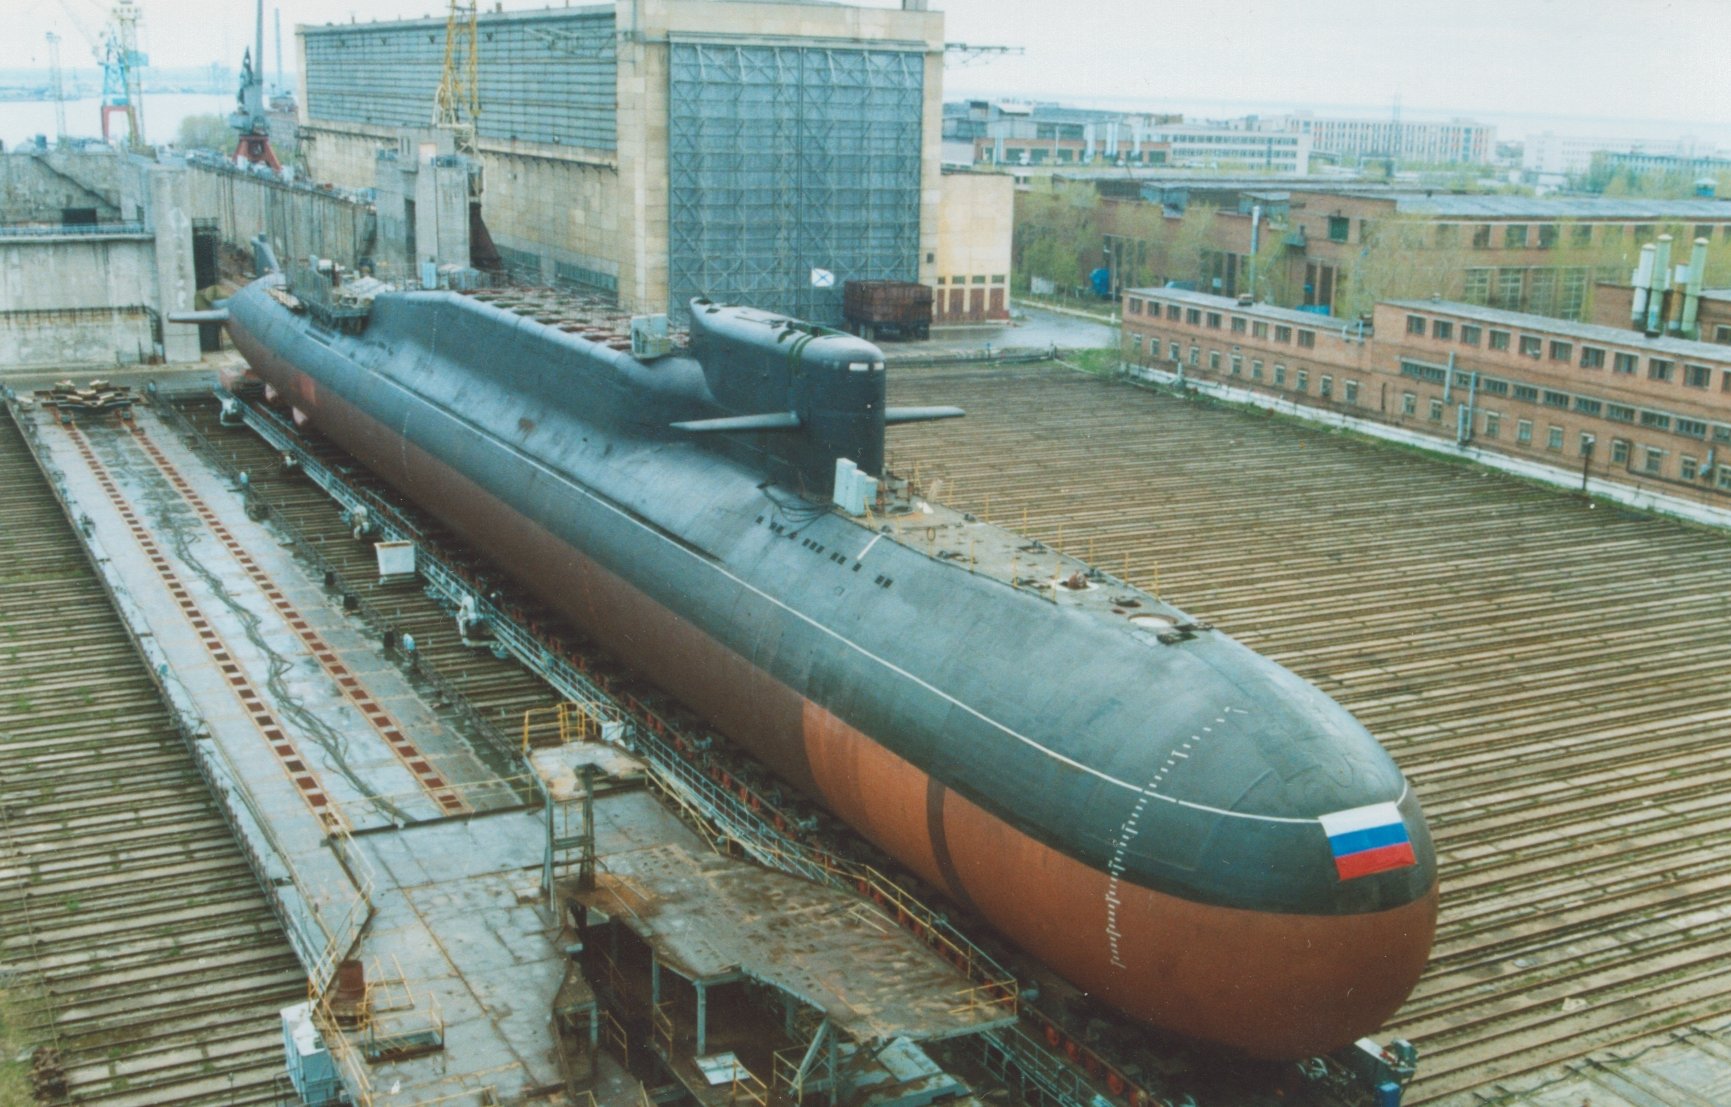 Пл ка. Подводная лодка 667бдрм "Дельфин". 667 БДРМ подводная лодка. Подводные лодки проекта 941 «акула». Подводная лодка 667 БДРМ Екатеринбург.